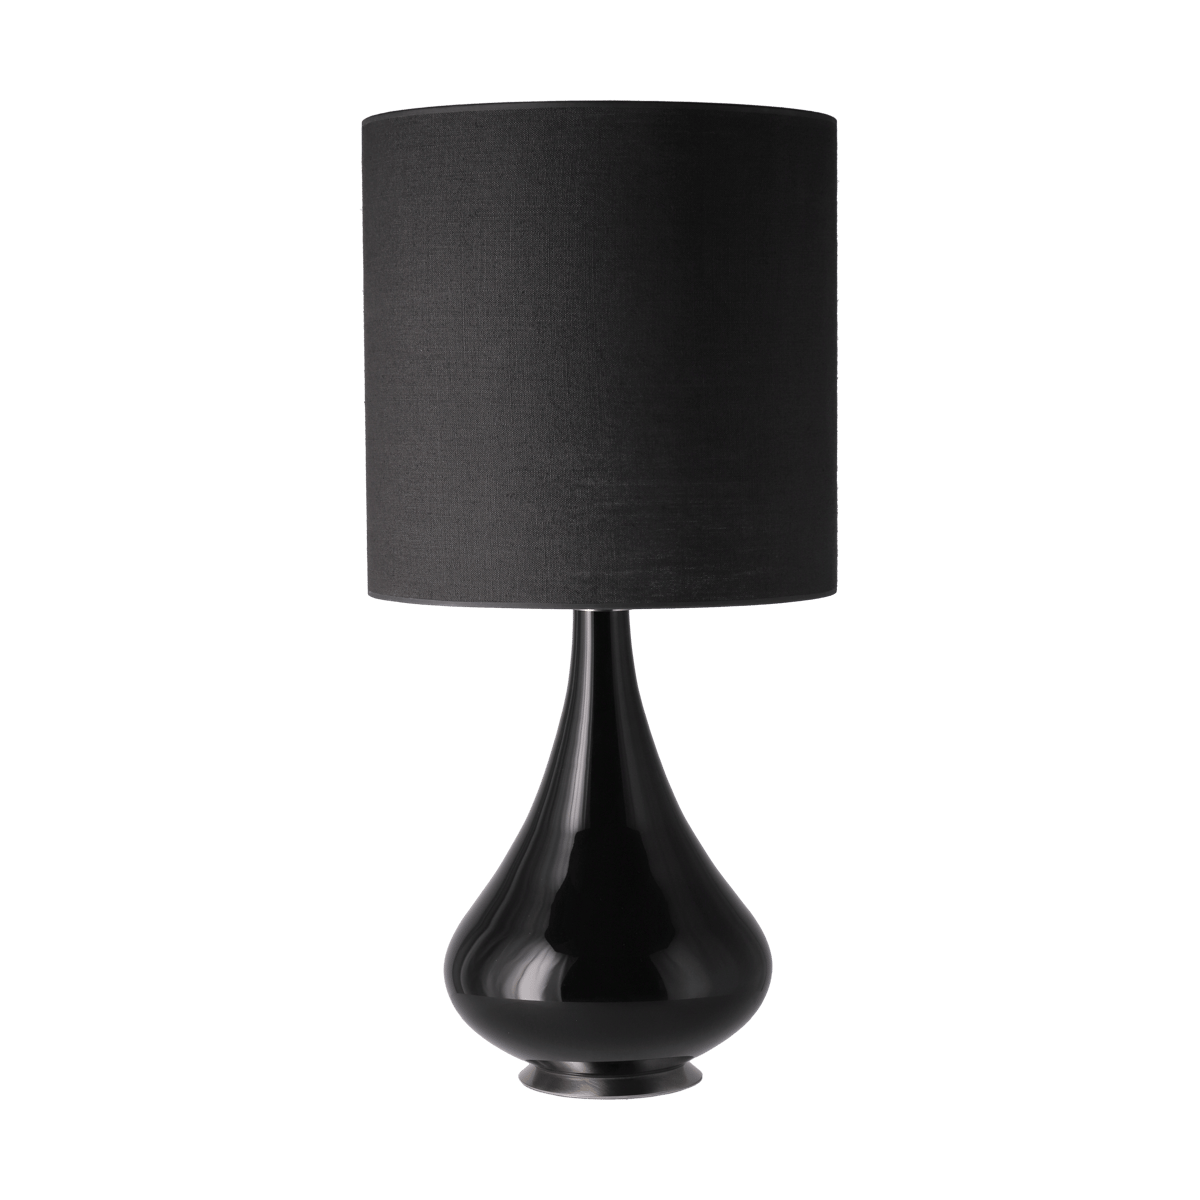 Flavia Lamps Renata tafellamp zwarte lampvoet Lino Negro M